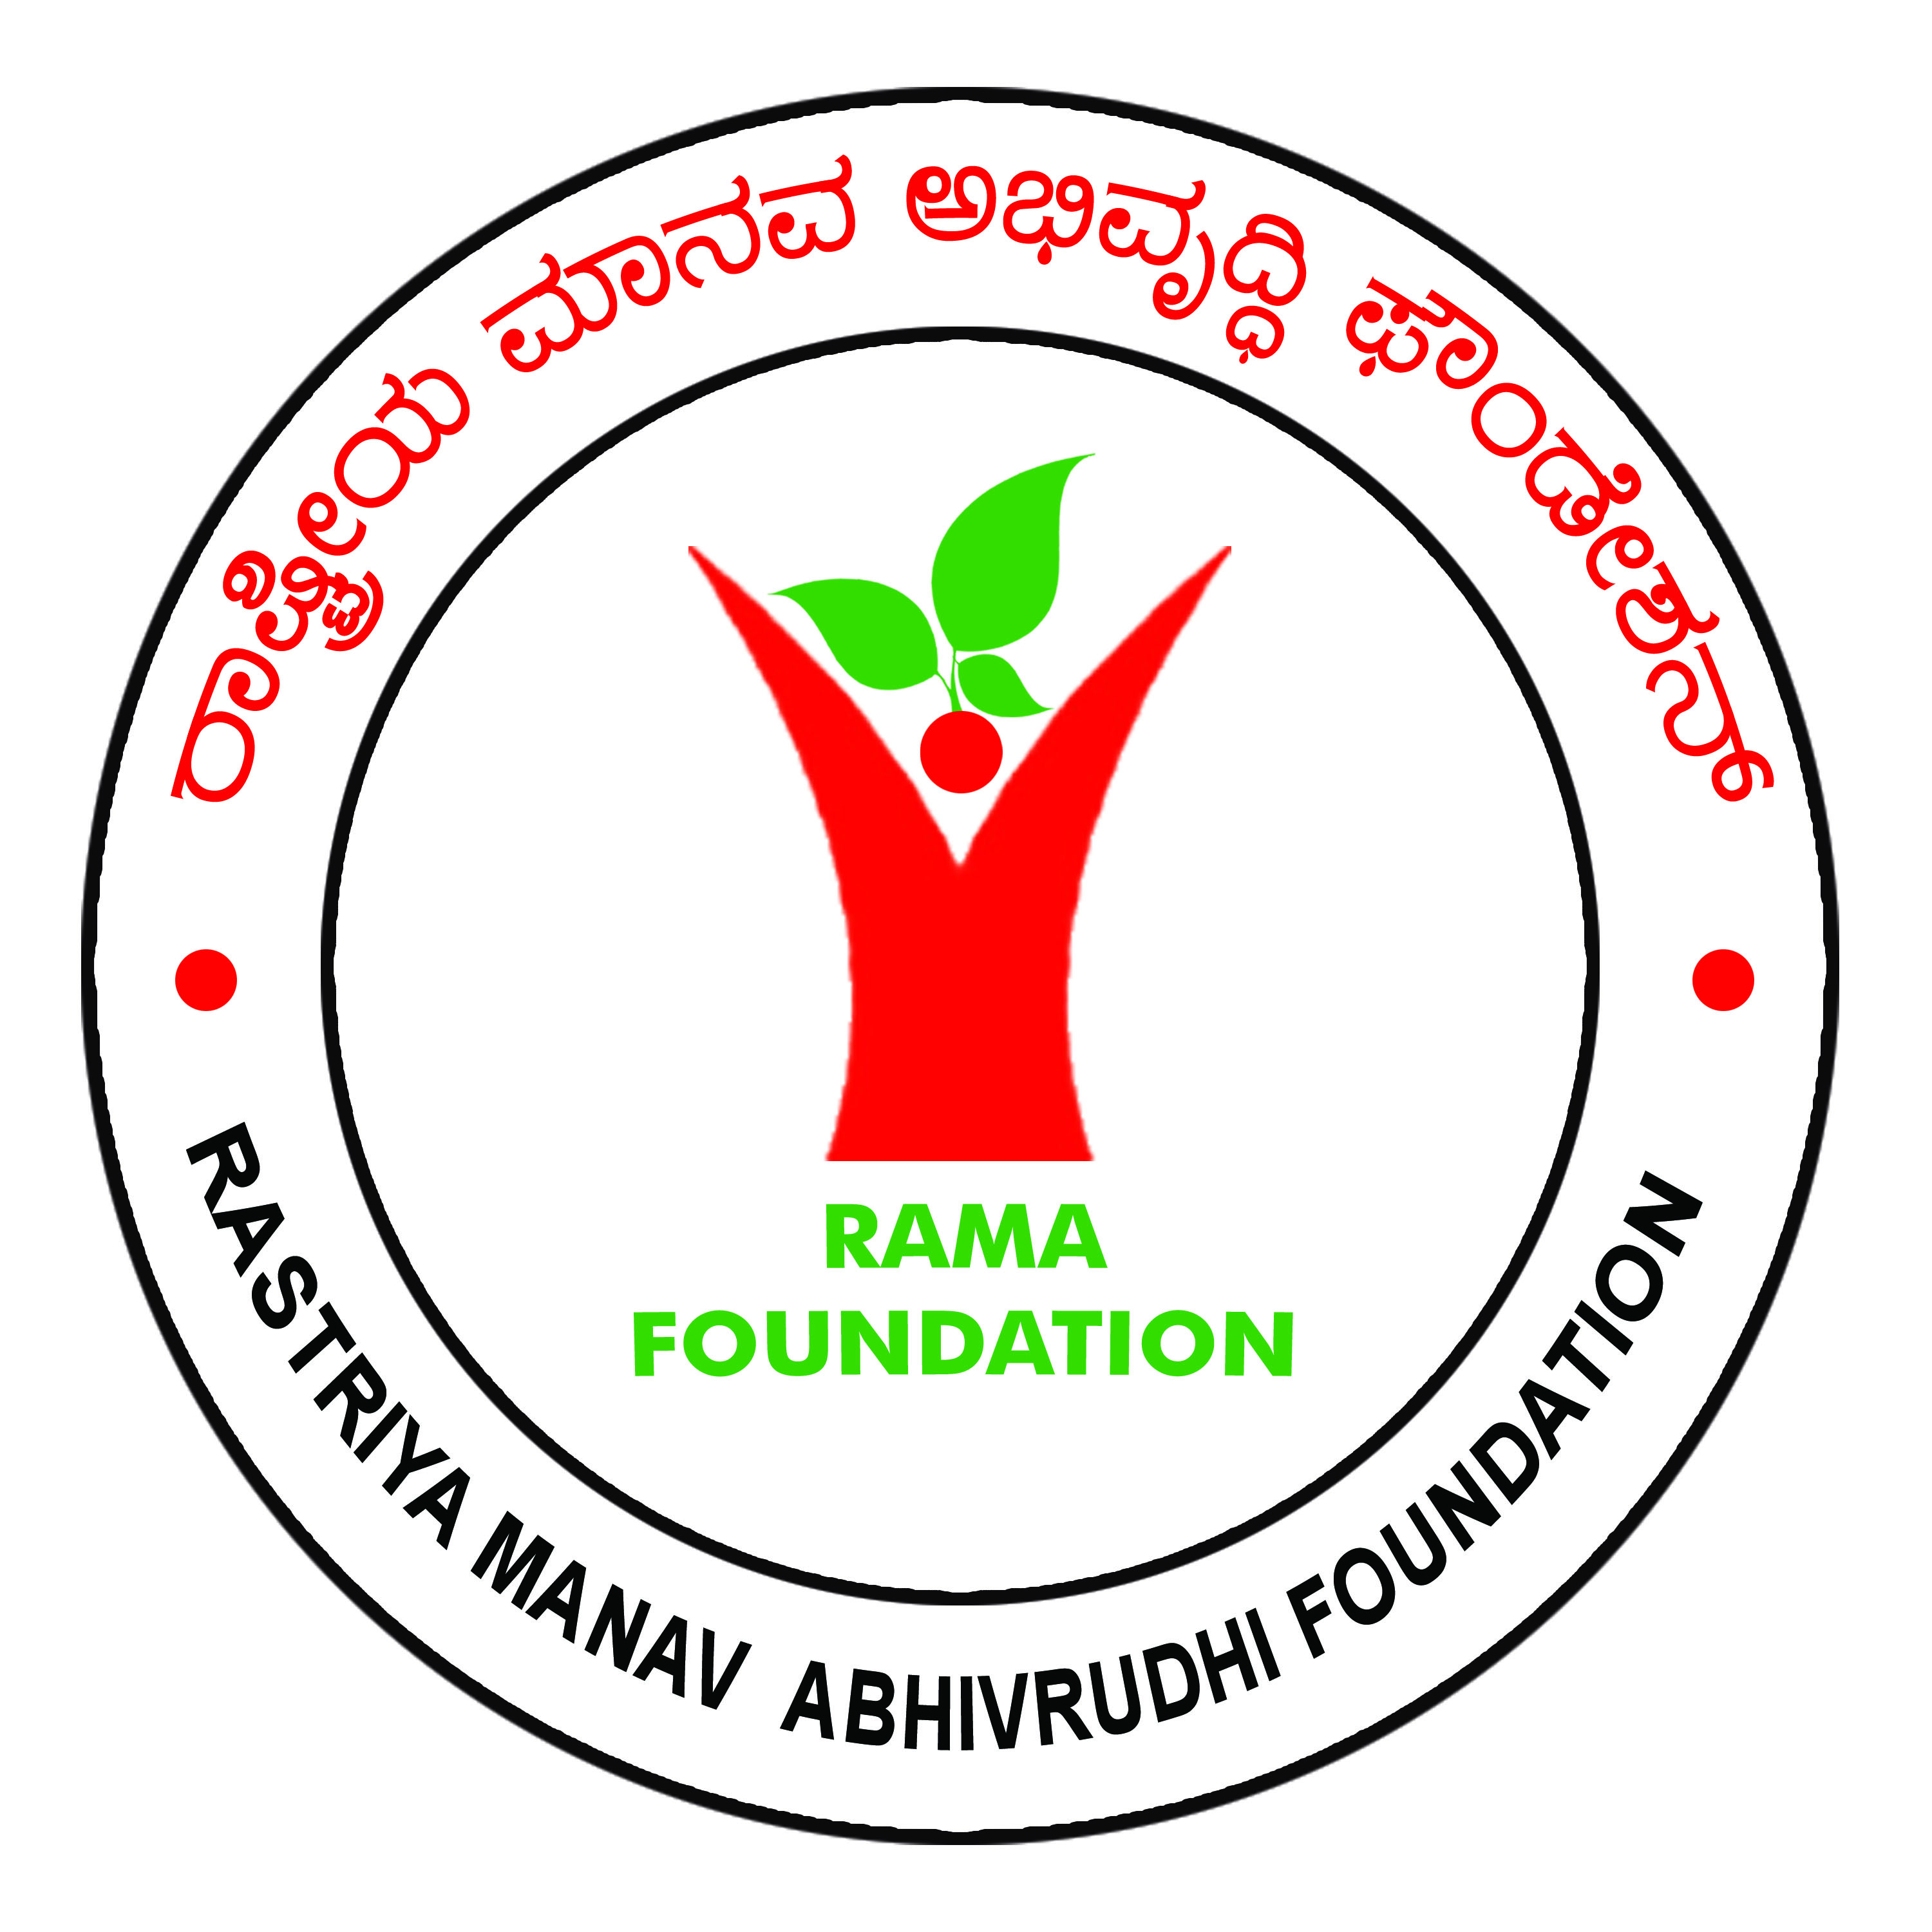 /media/ramafoundation/1NGO-00836-Rastriya Manav Abhivrudhi Foundation (RAMA FOUNDATION)-Logo.jpg